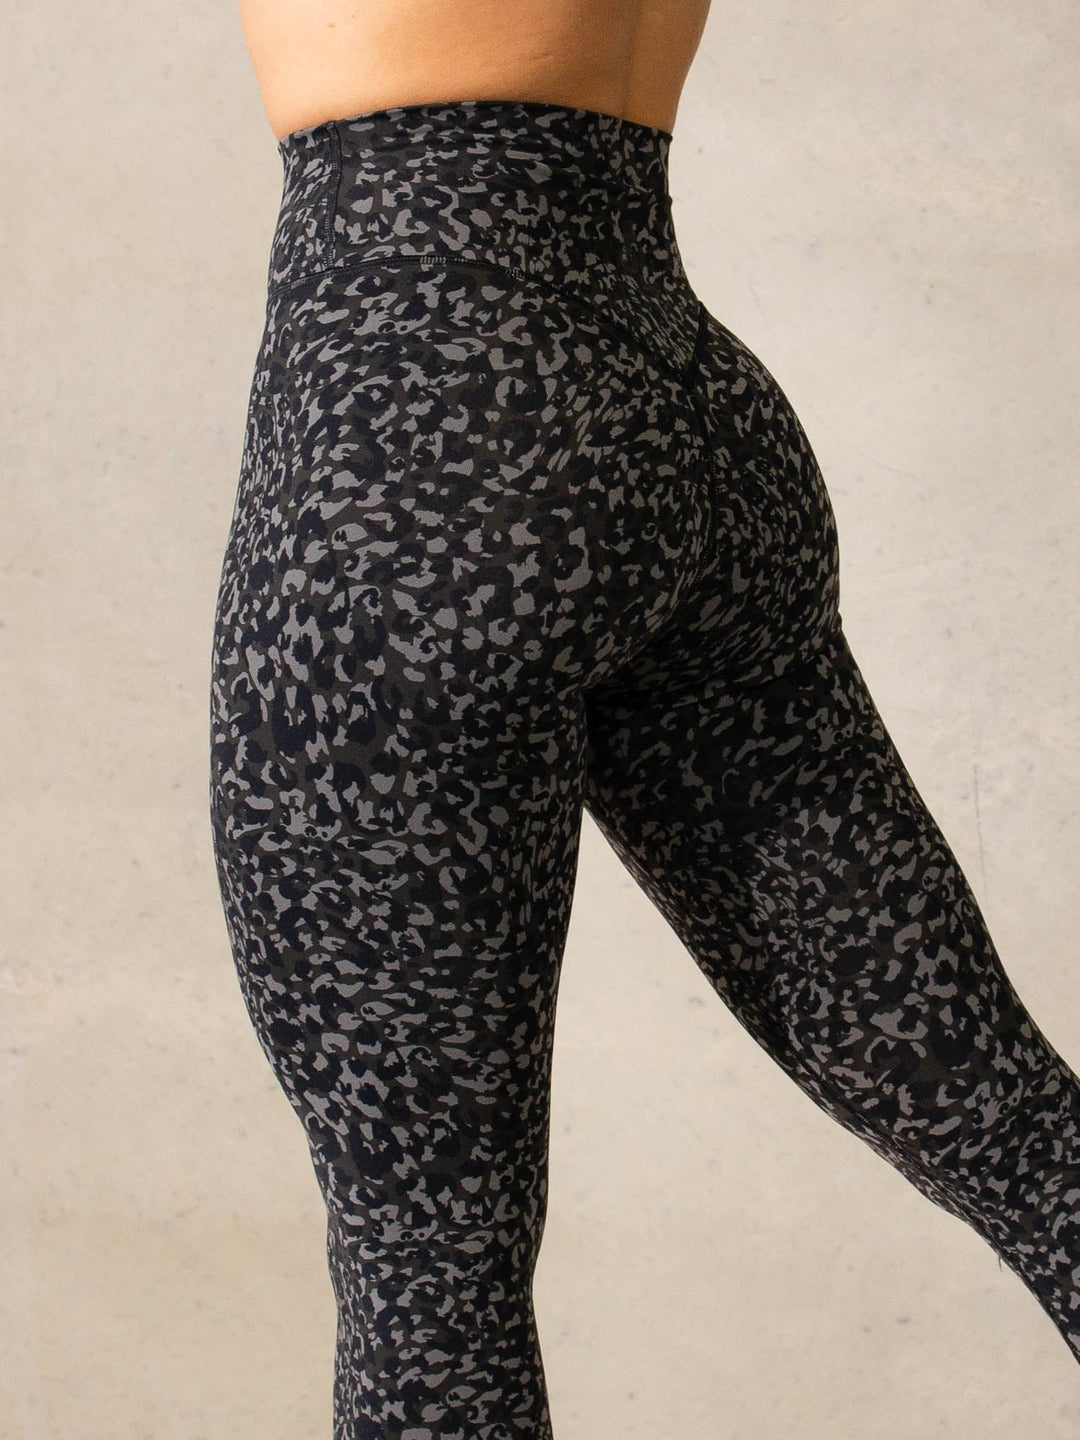 Women's Premium High-Waisted Black Leopard Leggings - All in